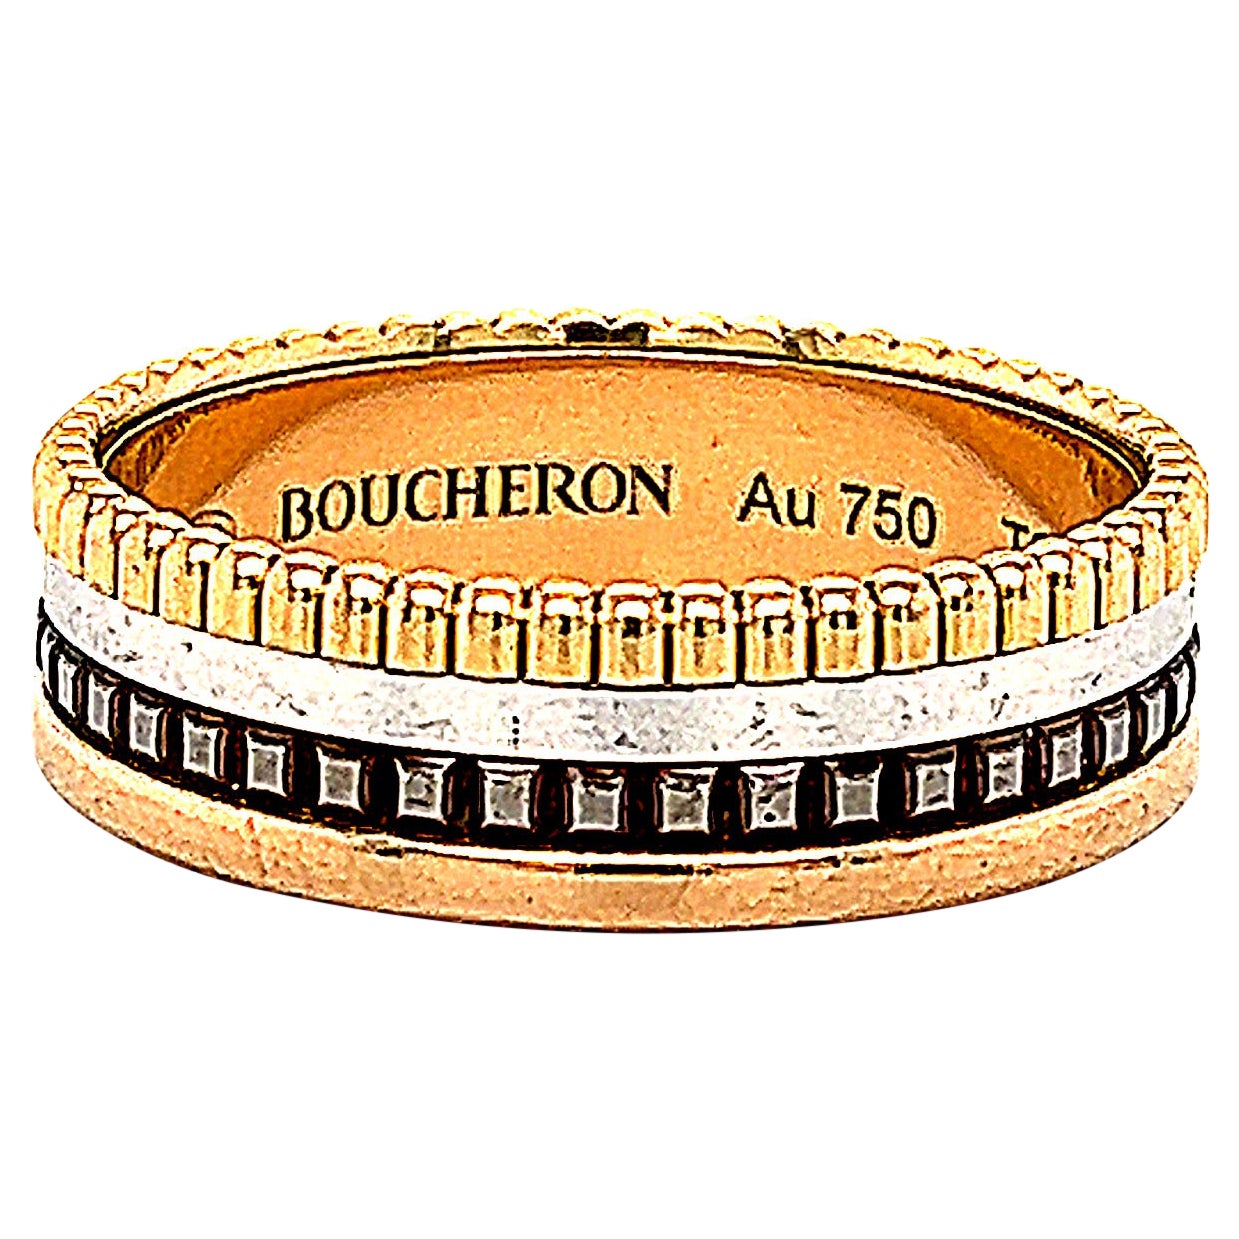 Boucheron Classic Quatre 18k Four-Color Gold Band Ring